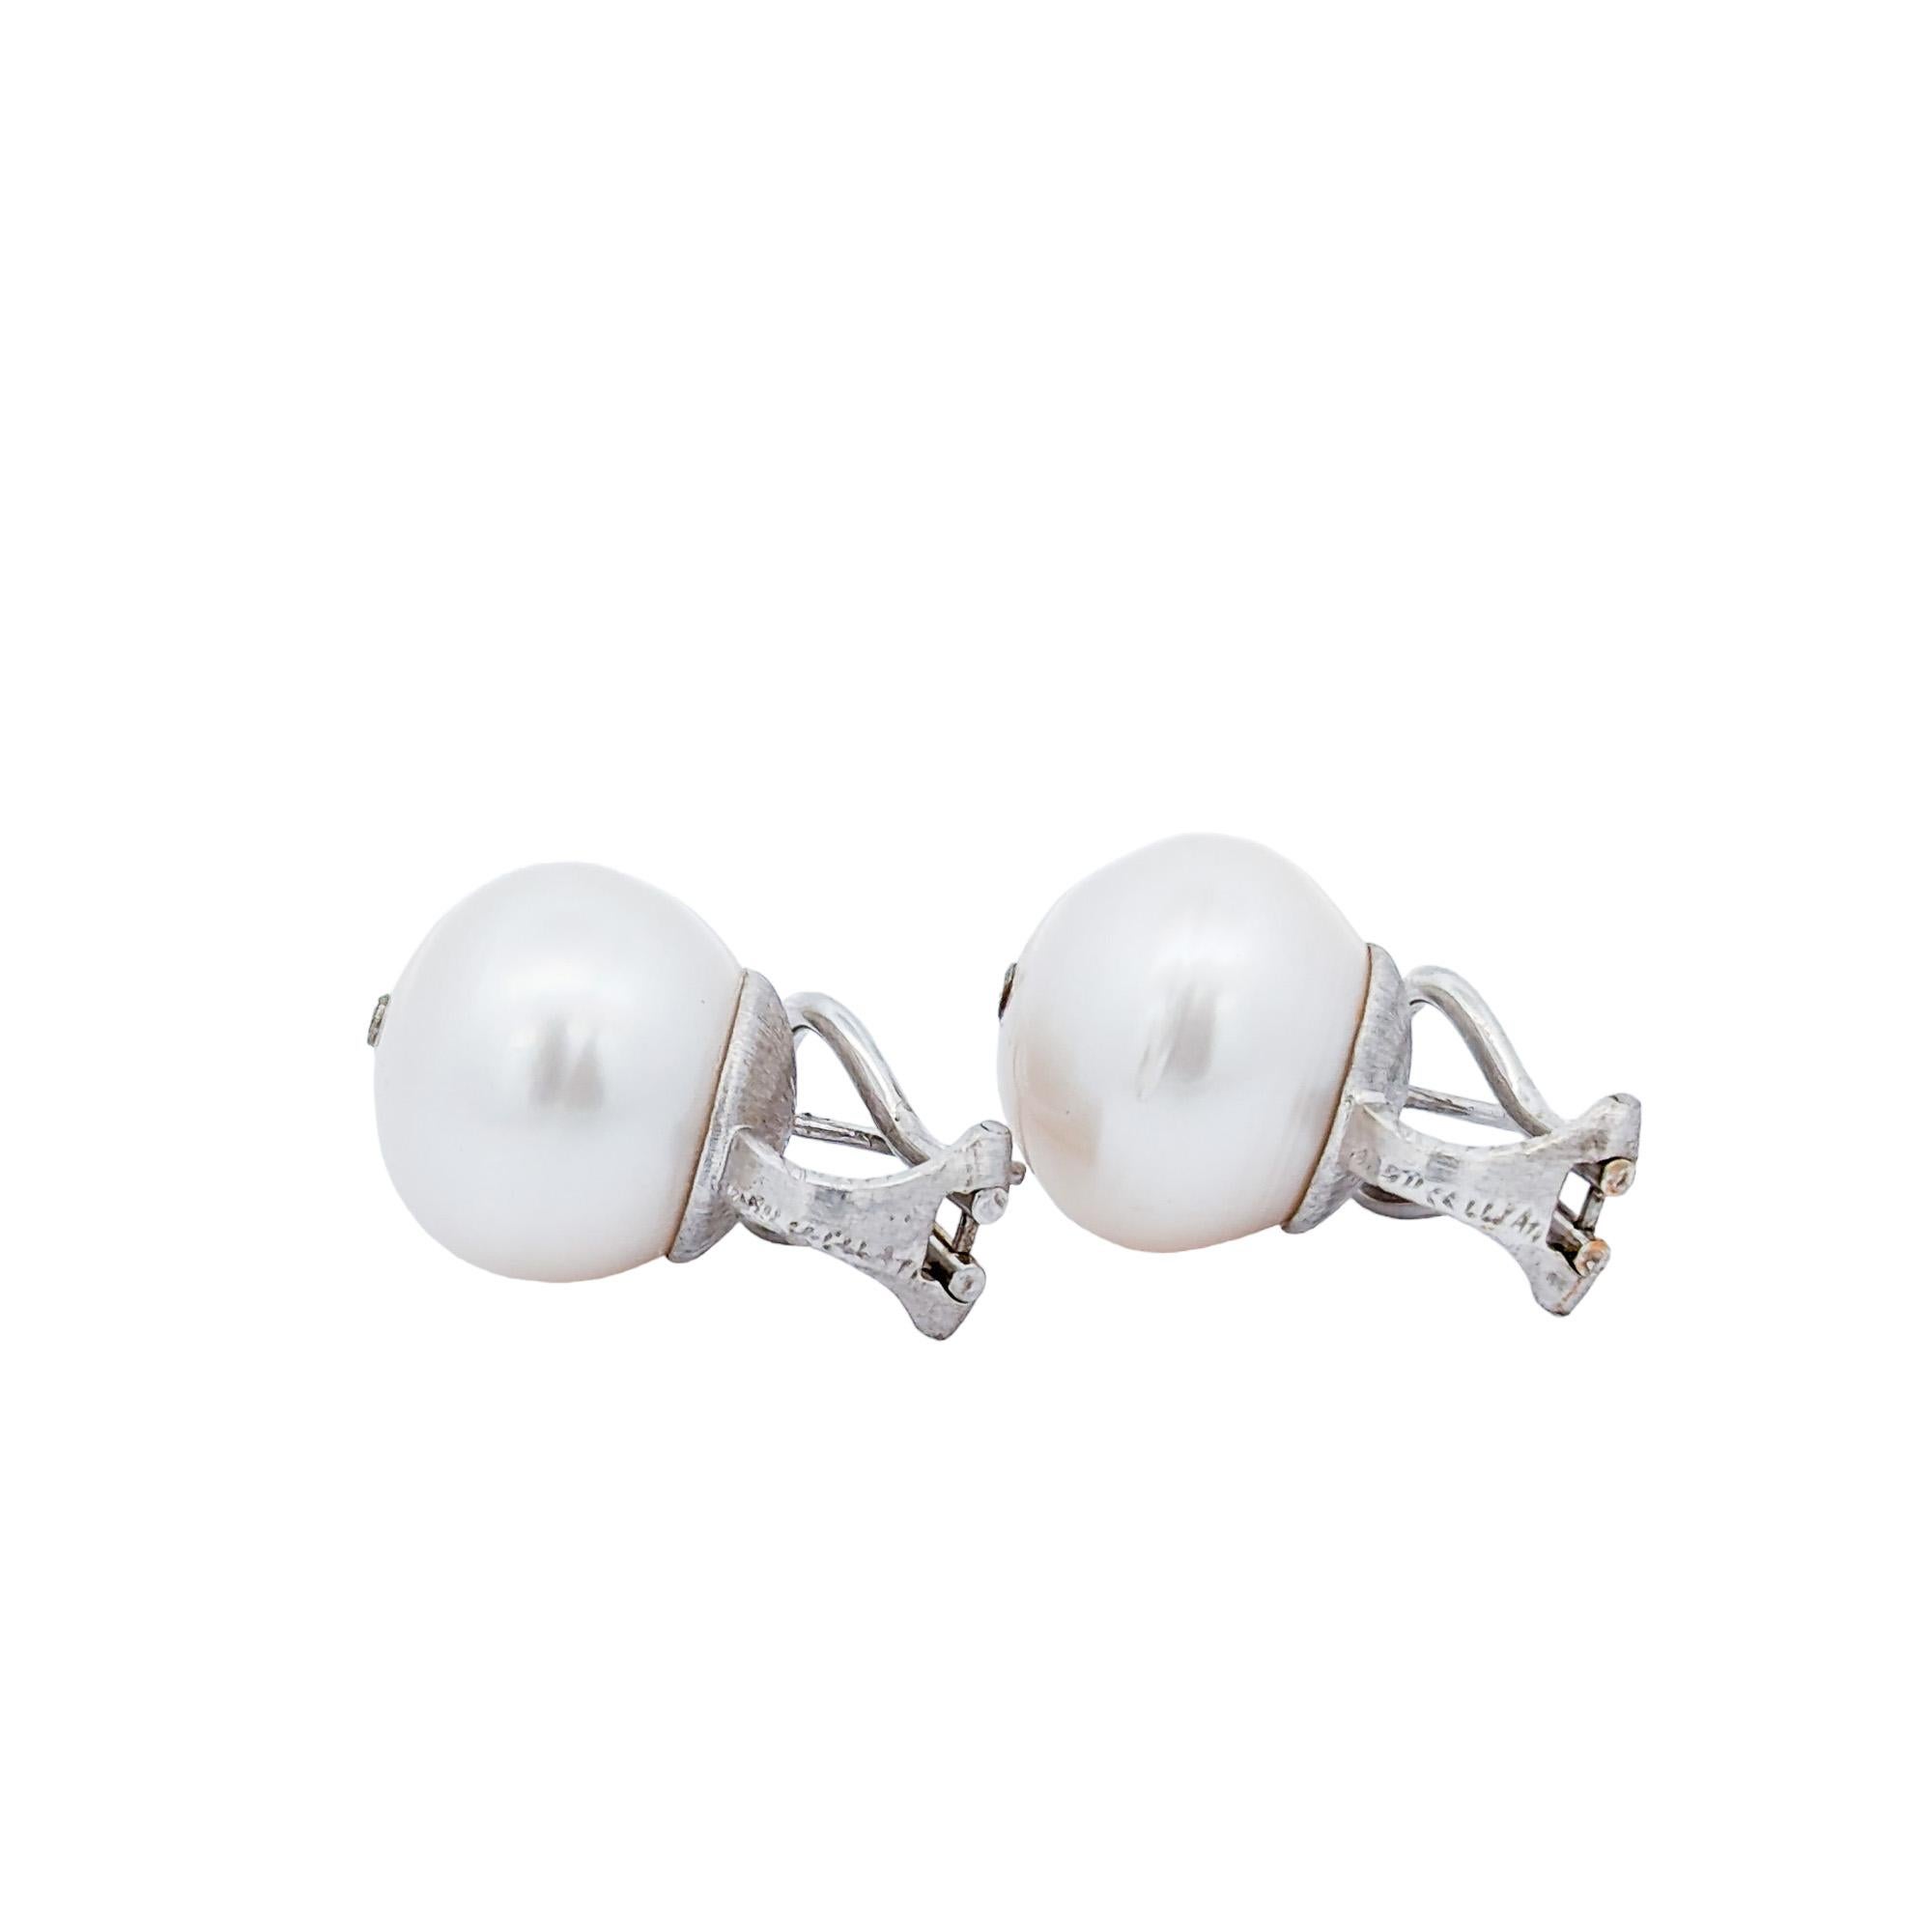 Créateur : Mario Buccellati 

Période : Milieu du 20e siècle

Métal : Or blanc 18K

Perles : Deux (2) perles de culture de 14 mm 

Poids : 12,8 grammes

